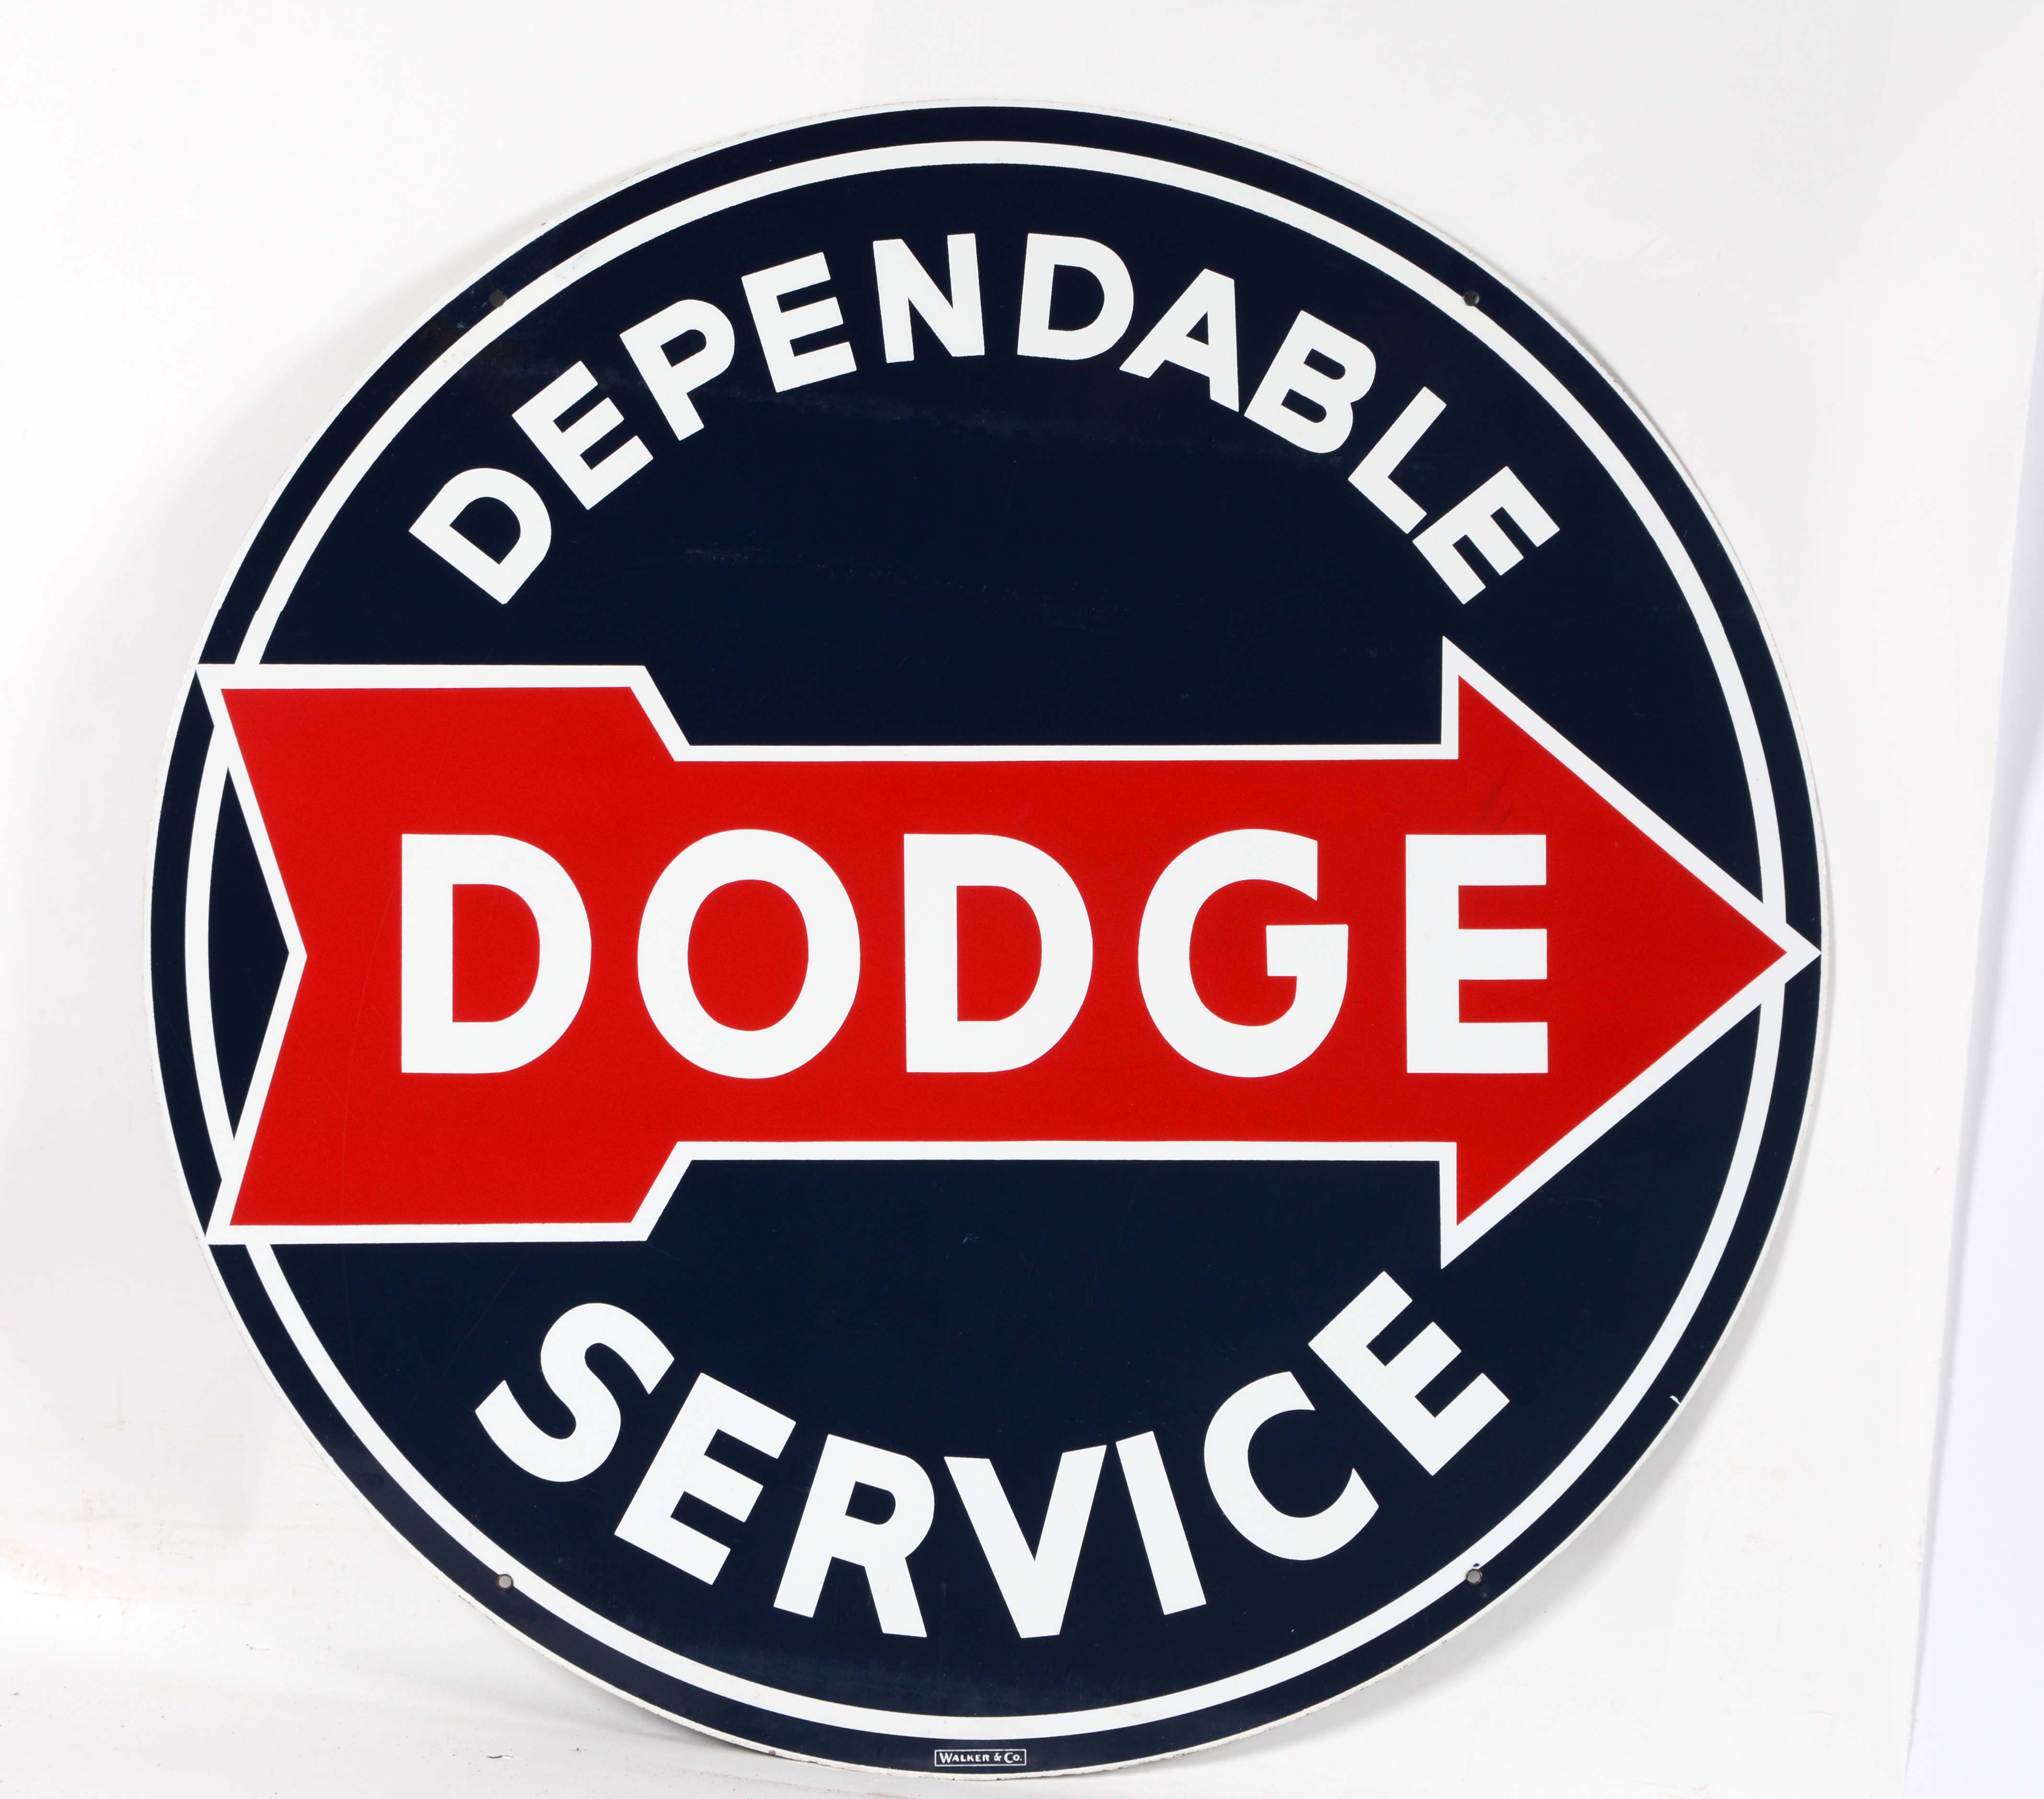 Dependable Dodge Service Porcelain Sign, estimated at $3,000-4,500.